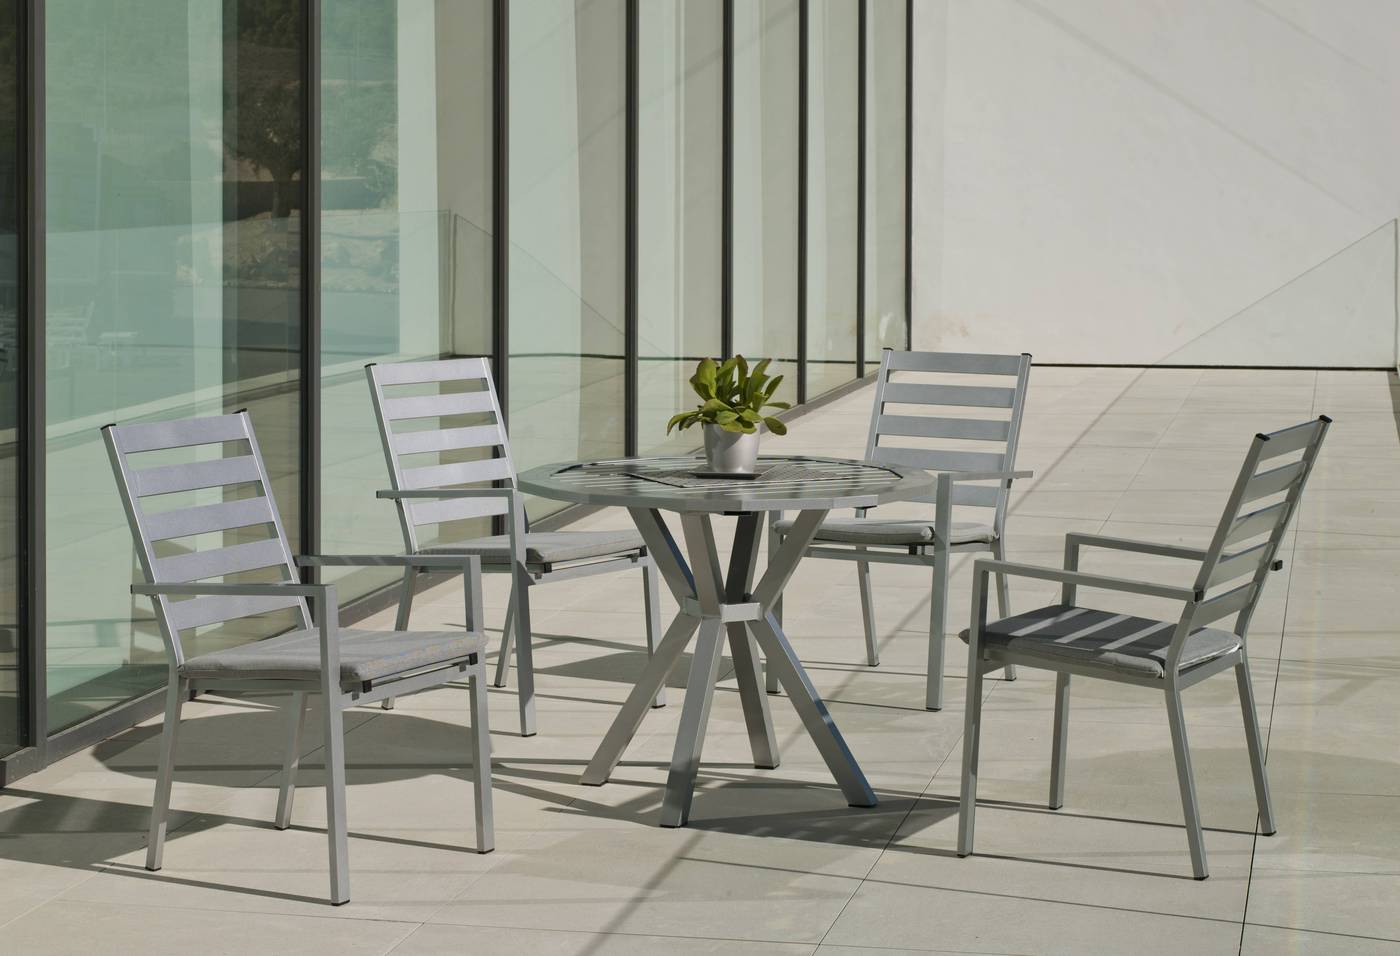 Moderno conjunto de aluminio luxe: Mesa de comedor poligonal de 110 cm. + 4 sillones de aluminio. Disponible en color blanco, plata y antracita.